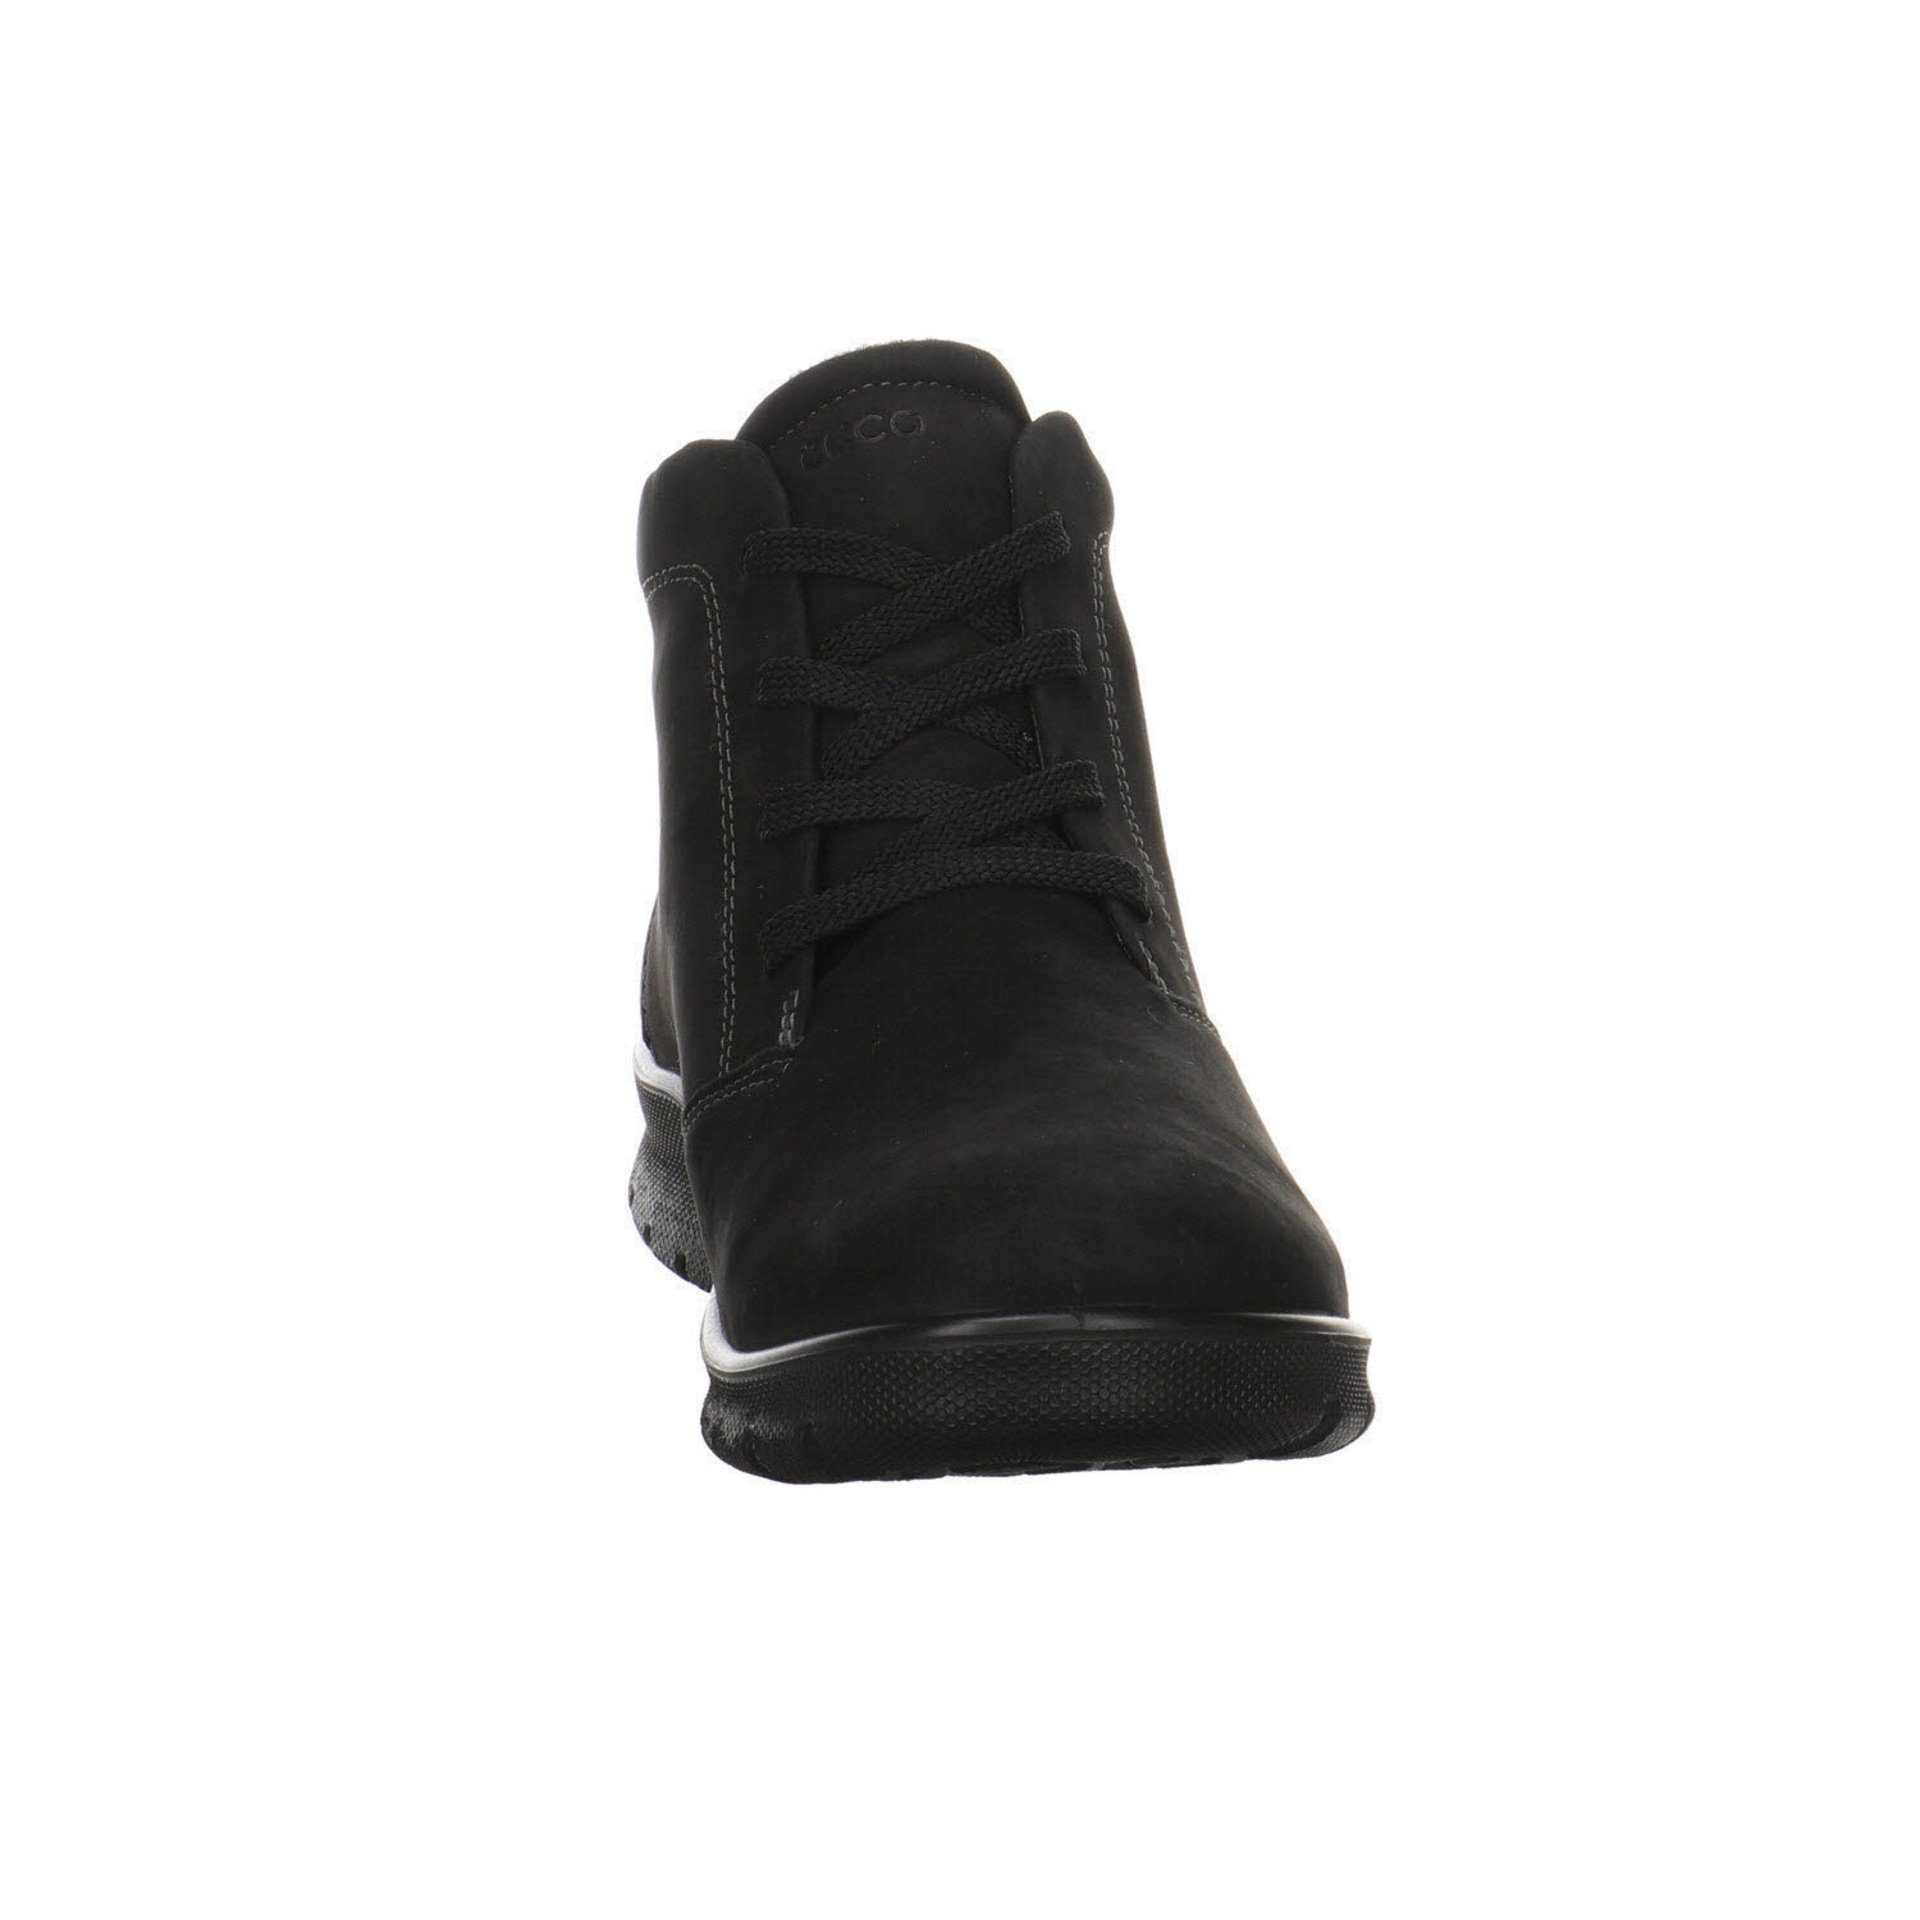 Schuhe Boots Stiefeletten black Babett Schnürstiefelette Damen Ecco Nubukleder